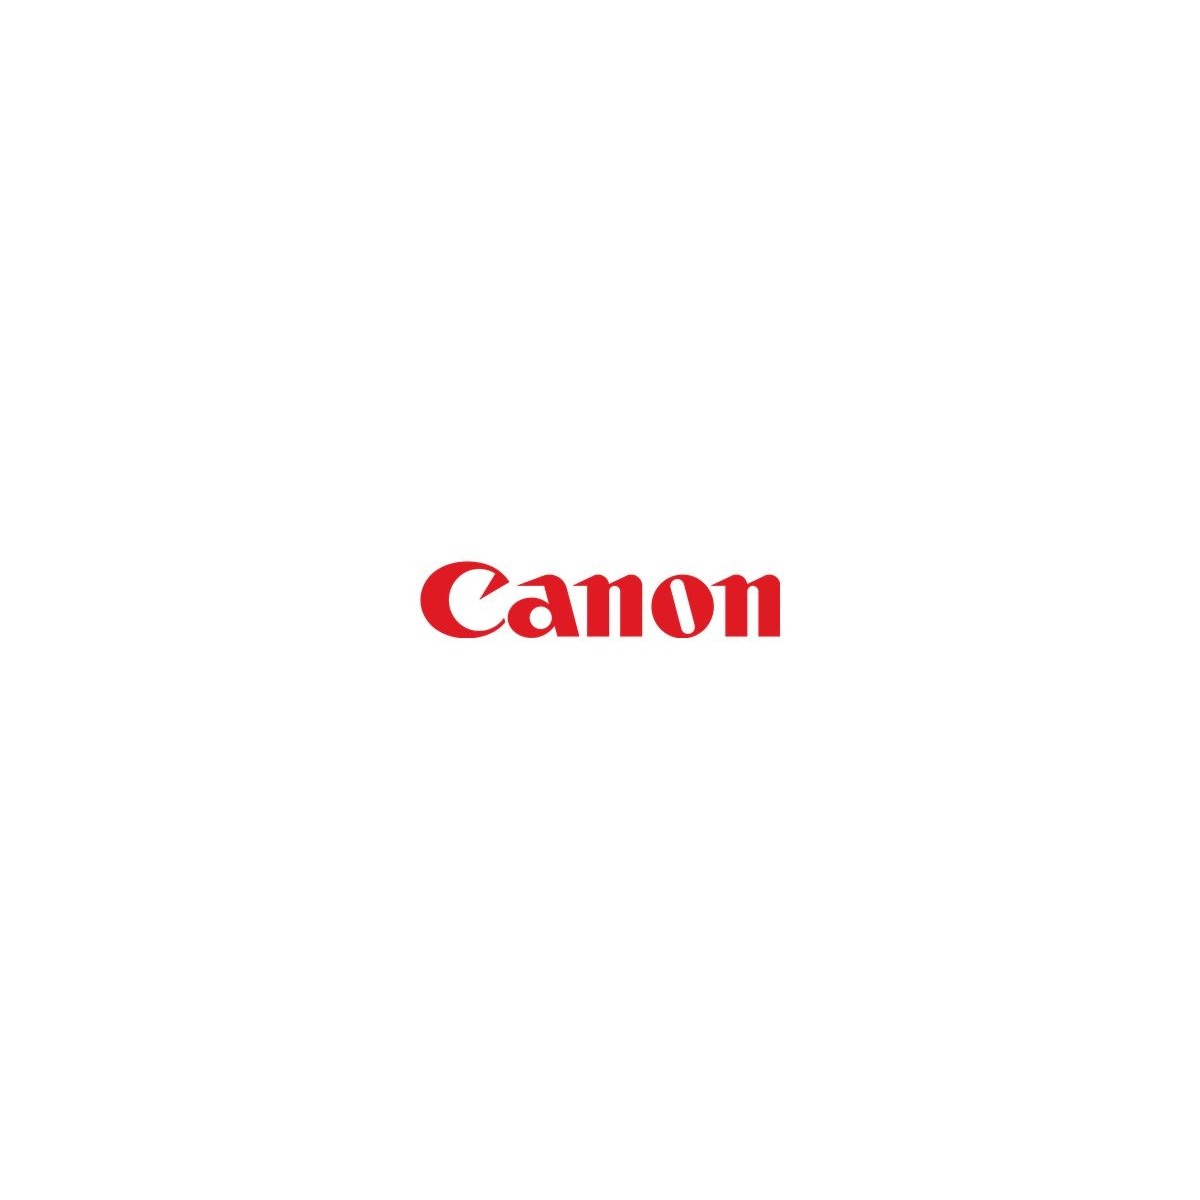 Canon 1834C001 - Paper feeder - White